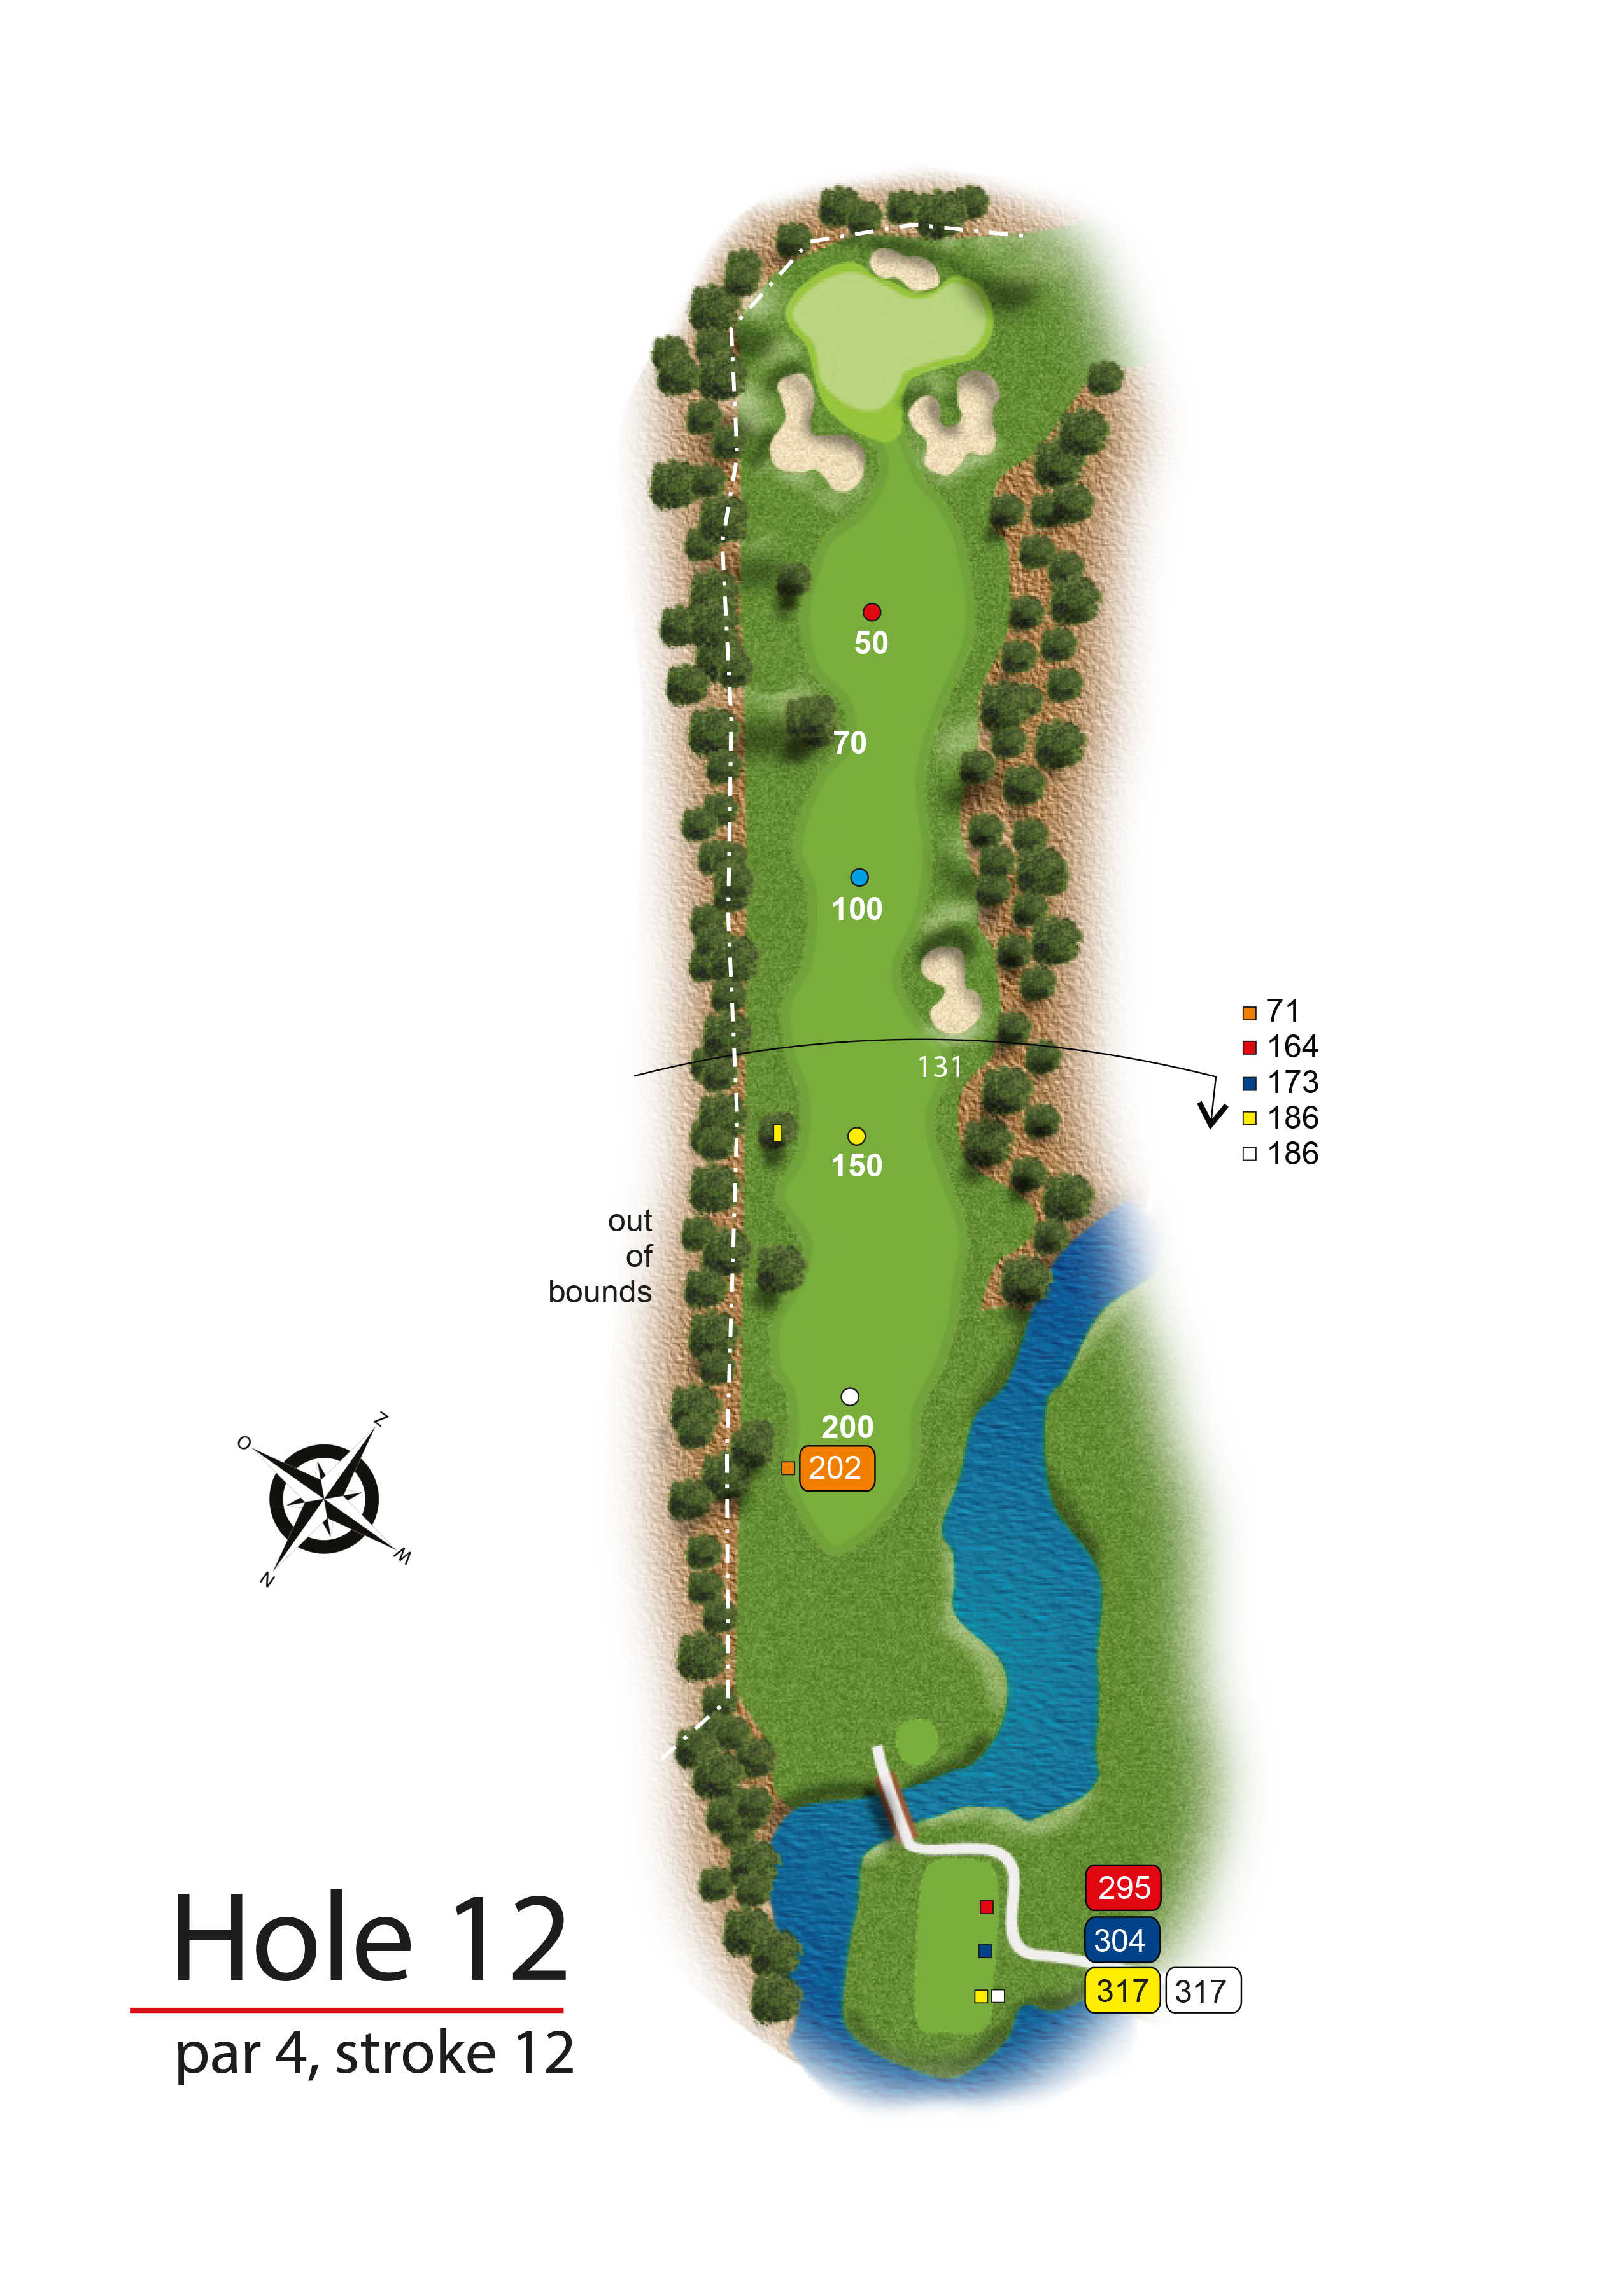 Hole 12 - simple